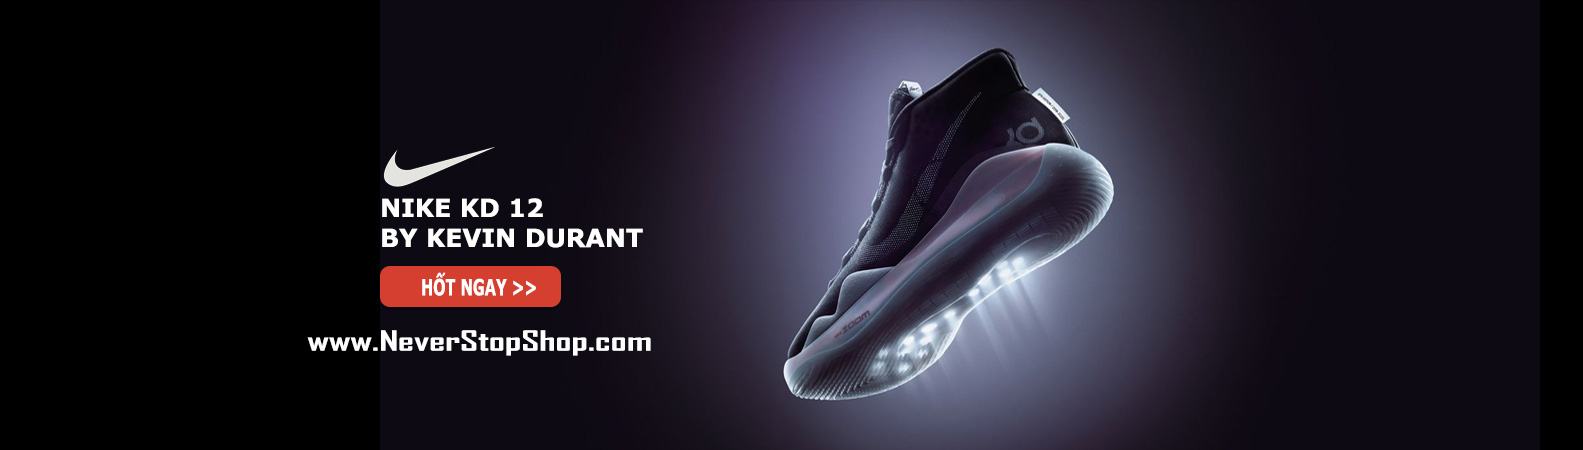 Giày bóng rổi Nike KD 12 replica giá rẻ | NeverStopShop.com